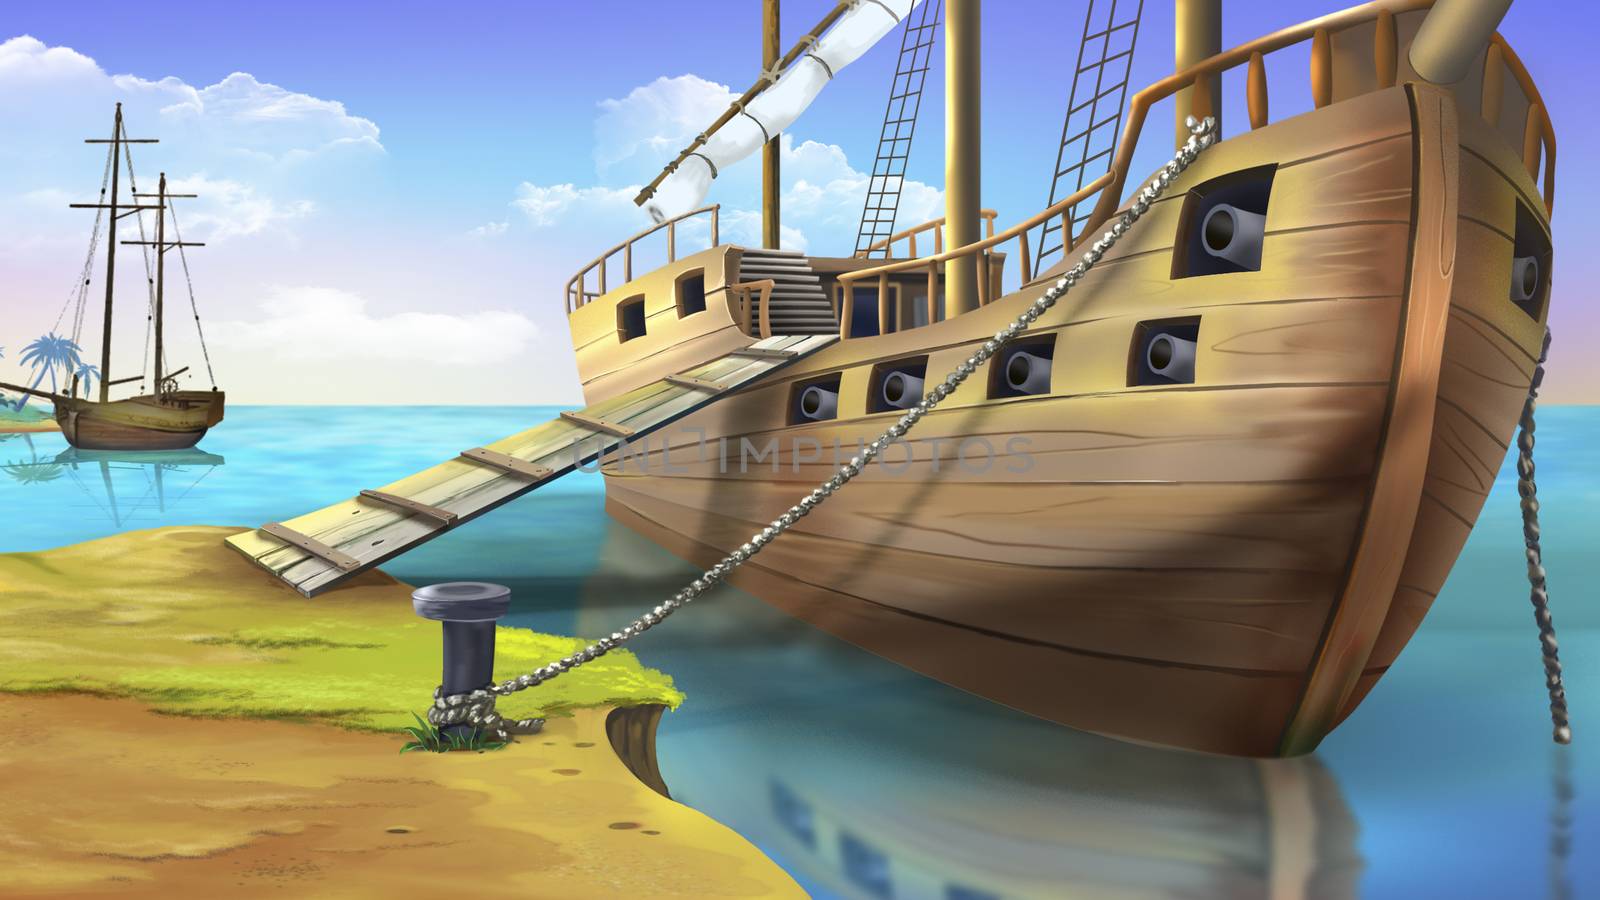 Pirate ship by Multipedia